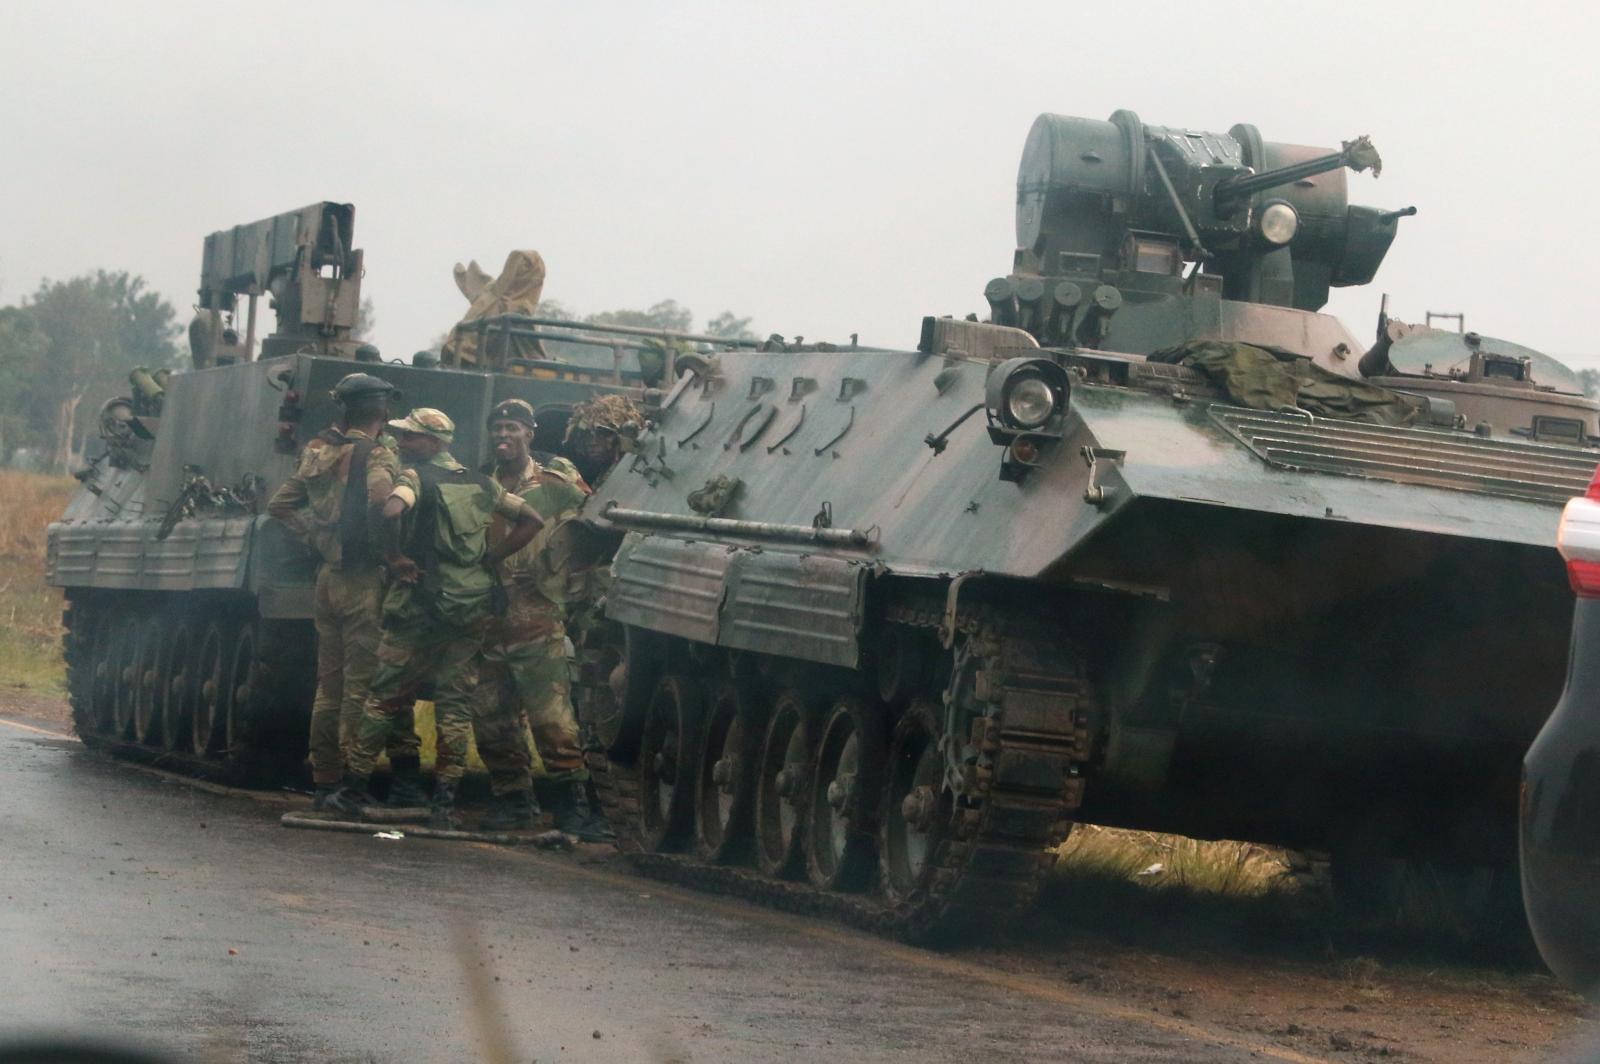 جيش زيمبابوي يستولي على السلطة وموجابي يقول إنه بخير